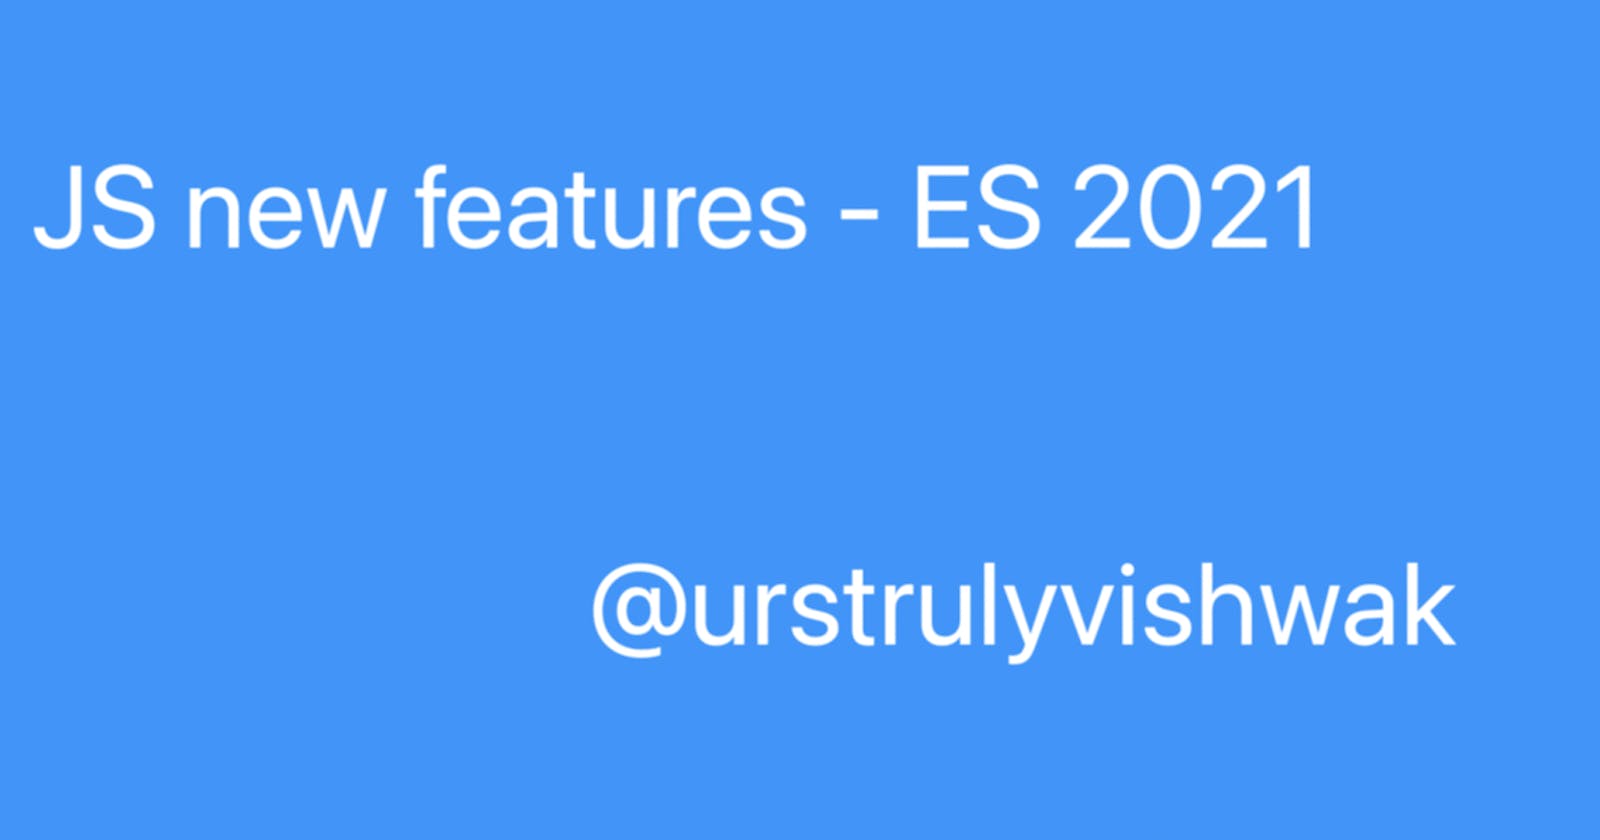 JS new features - ES 2021